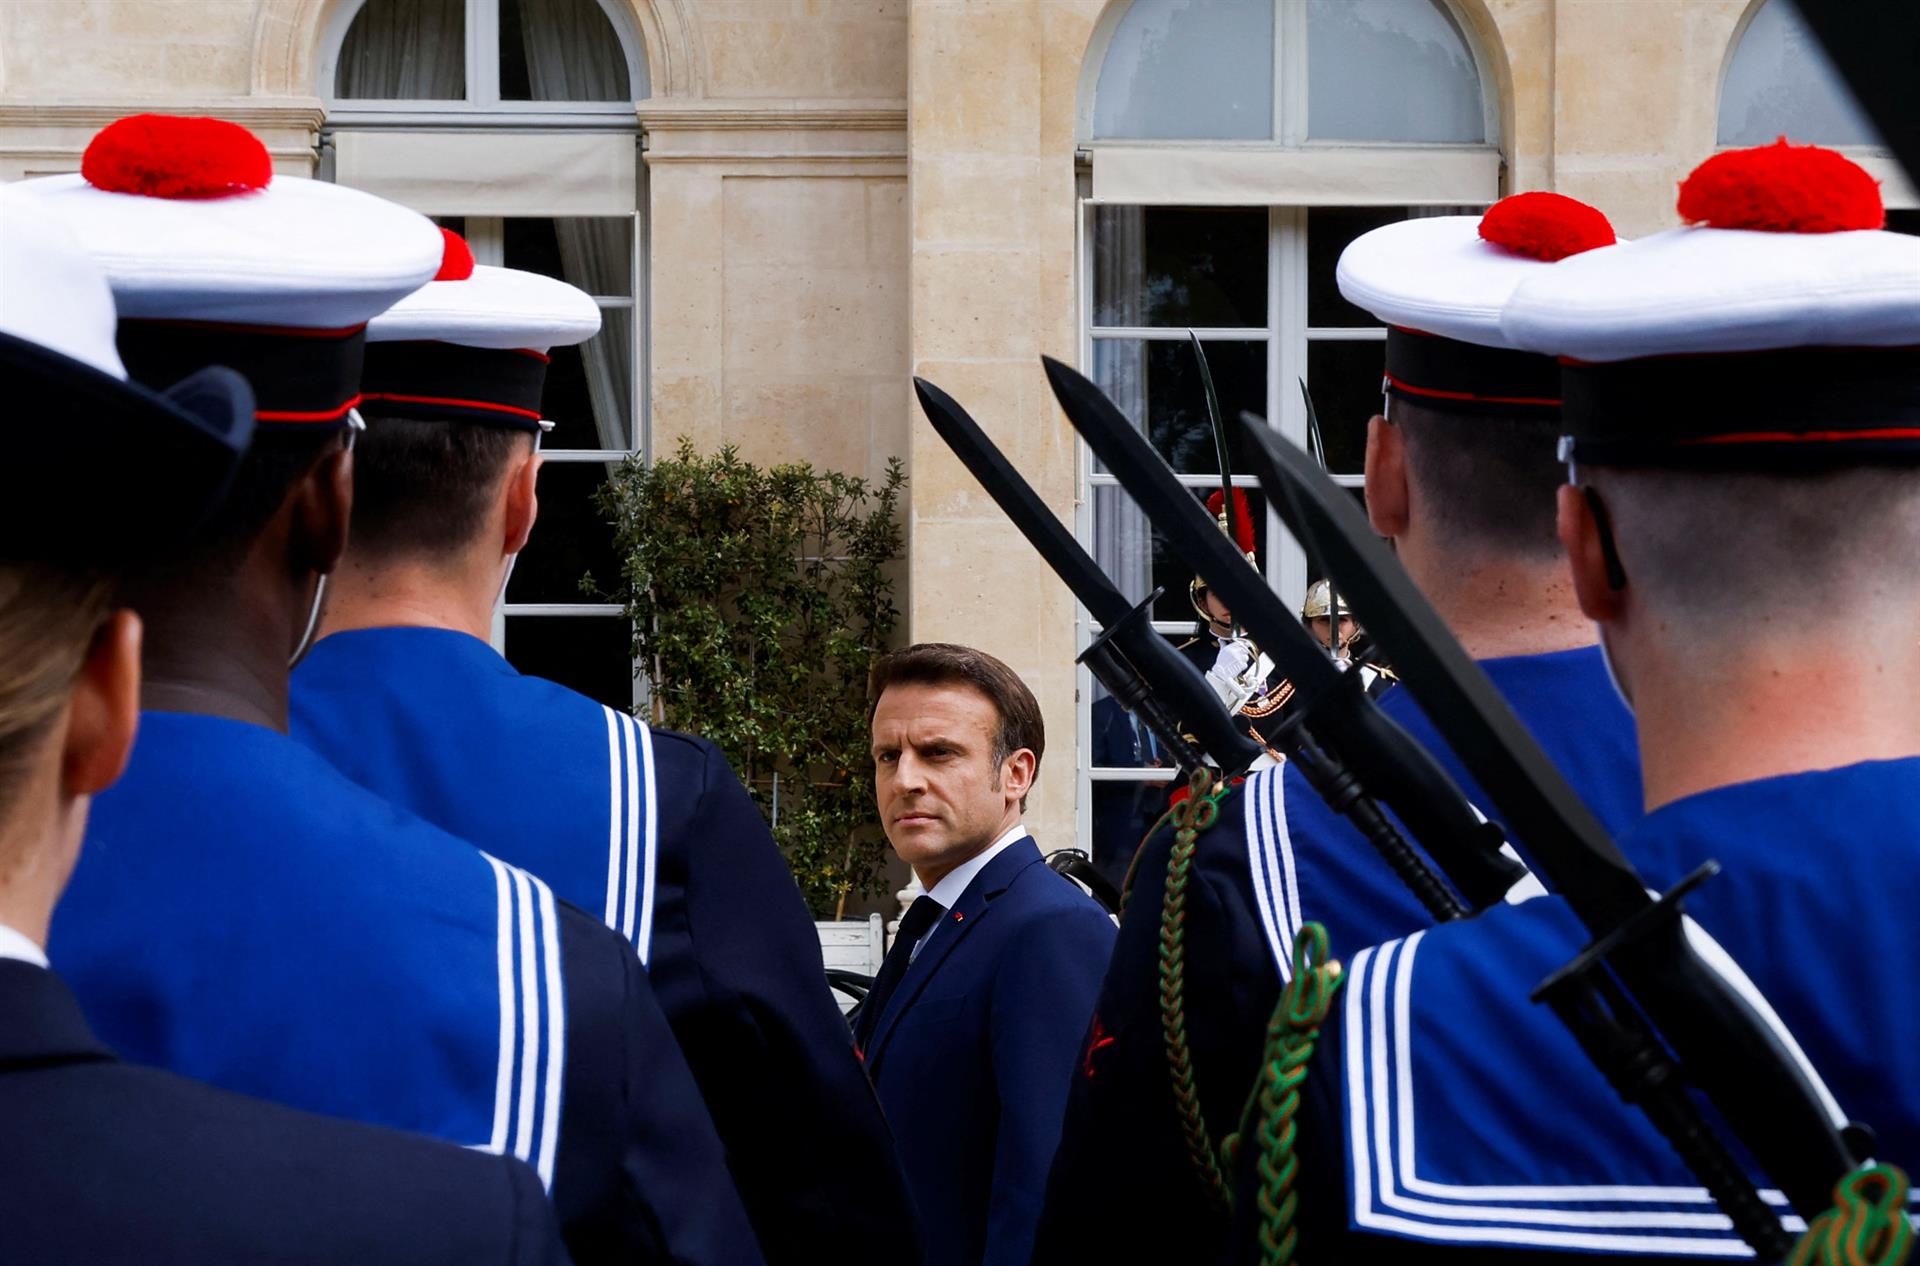 Macron es investido para su segundo mandato en Francia y promete un “proyecto europeo”